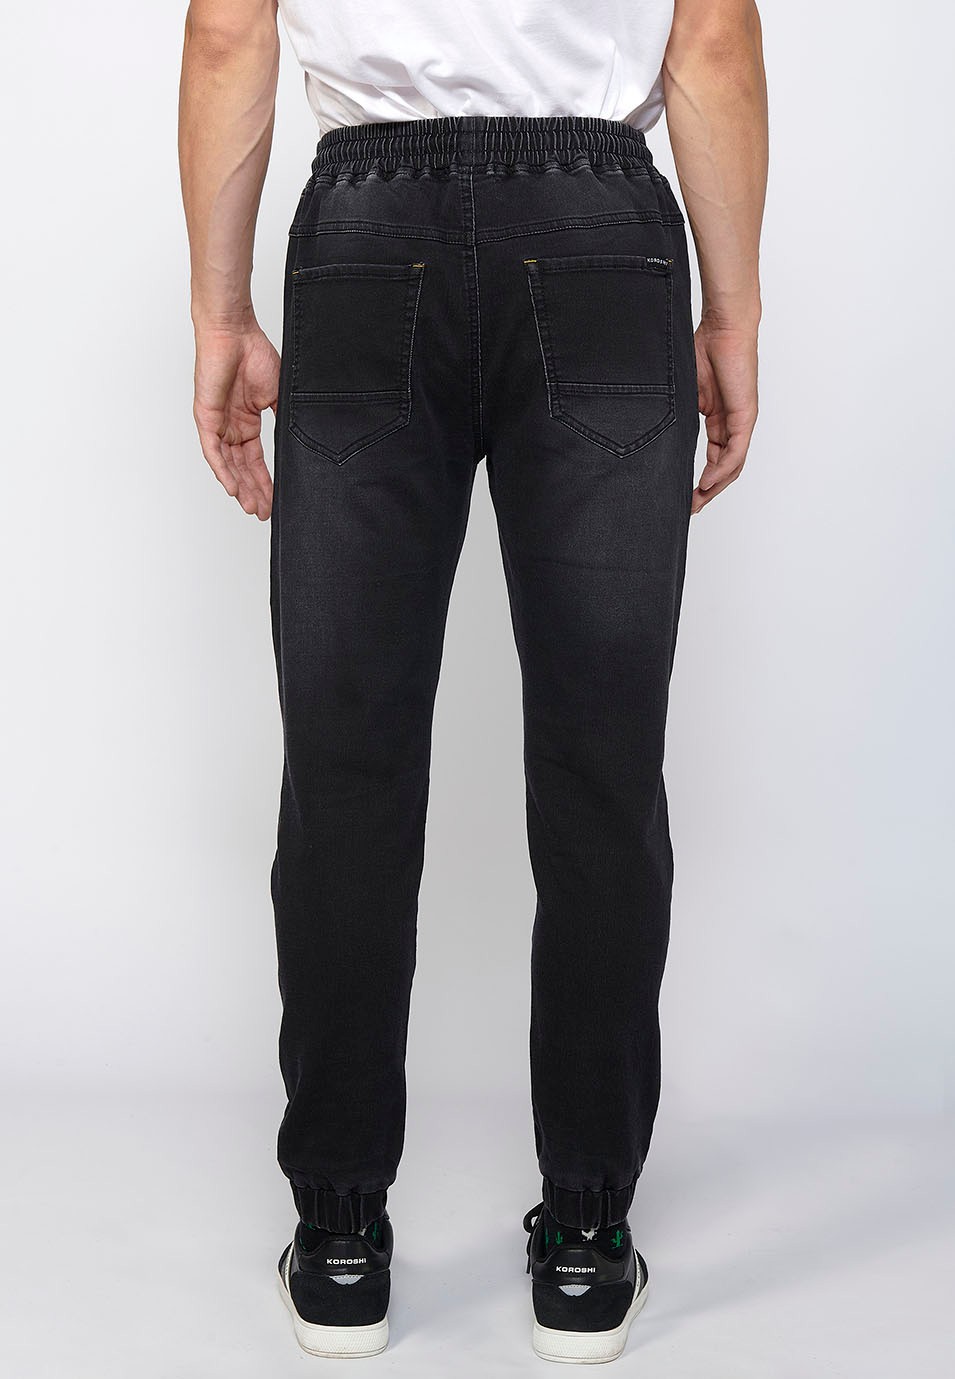 Pantalón largo jogger slim ajustado en tobillos con cintura ajustable con goma y cordón color Negro para Hombre 1